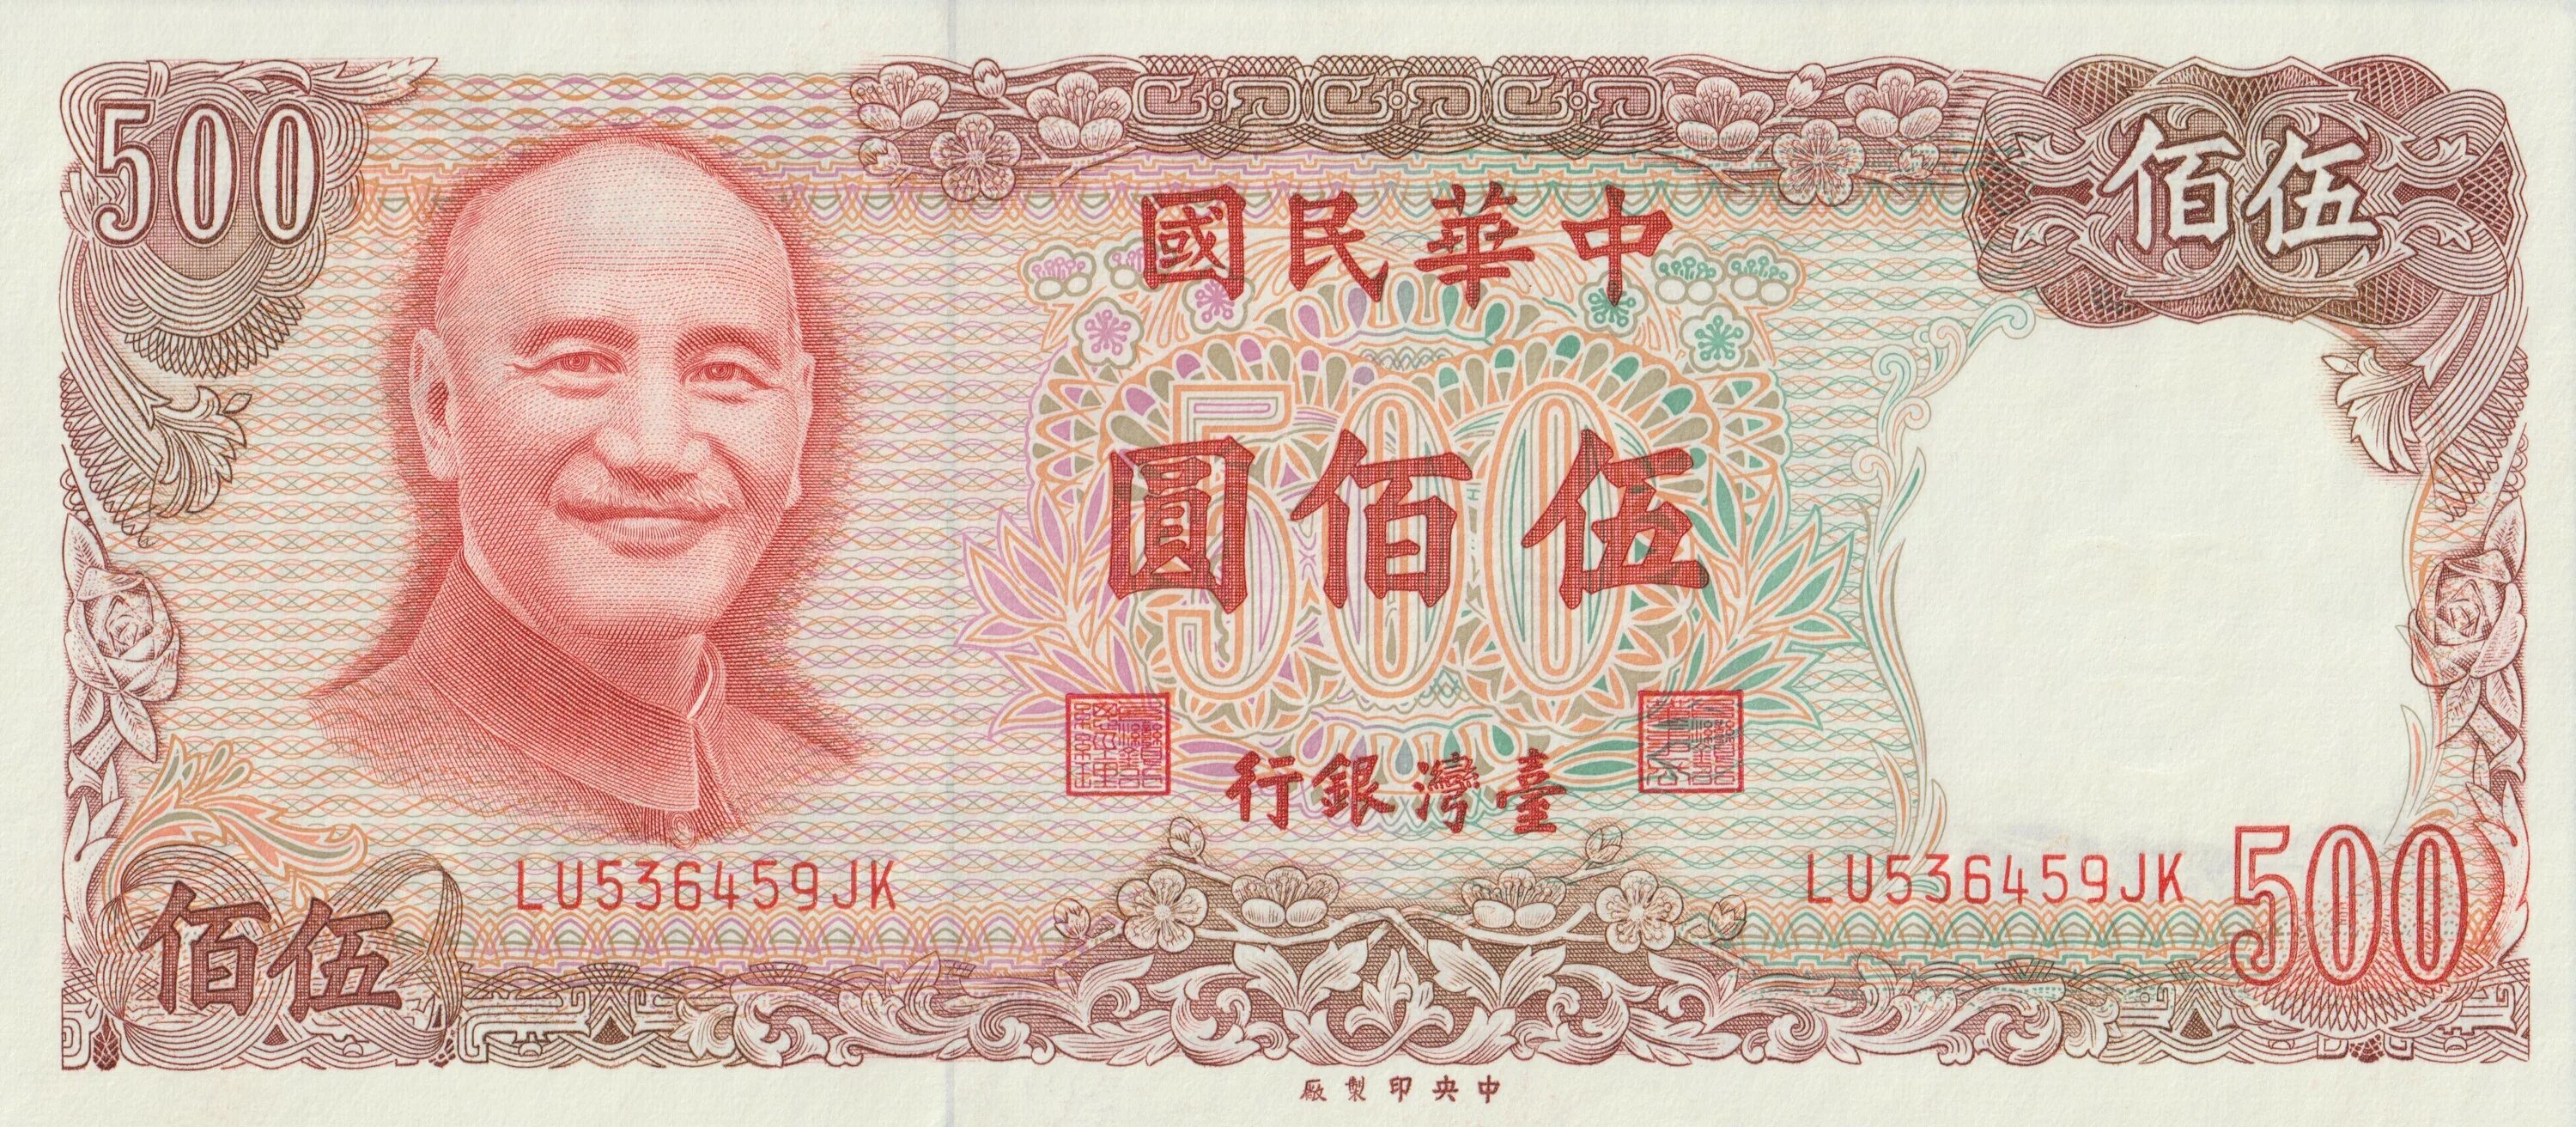 200 тысяч юаней. 500 Юань Тайваня банкнота. Китайский Йуан 500. 1 Юань Чан Кайши Тайваня. Купюра 500 юаней Китай.